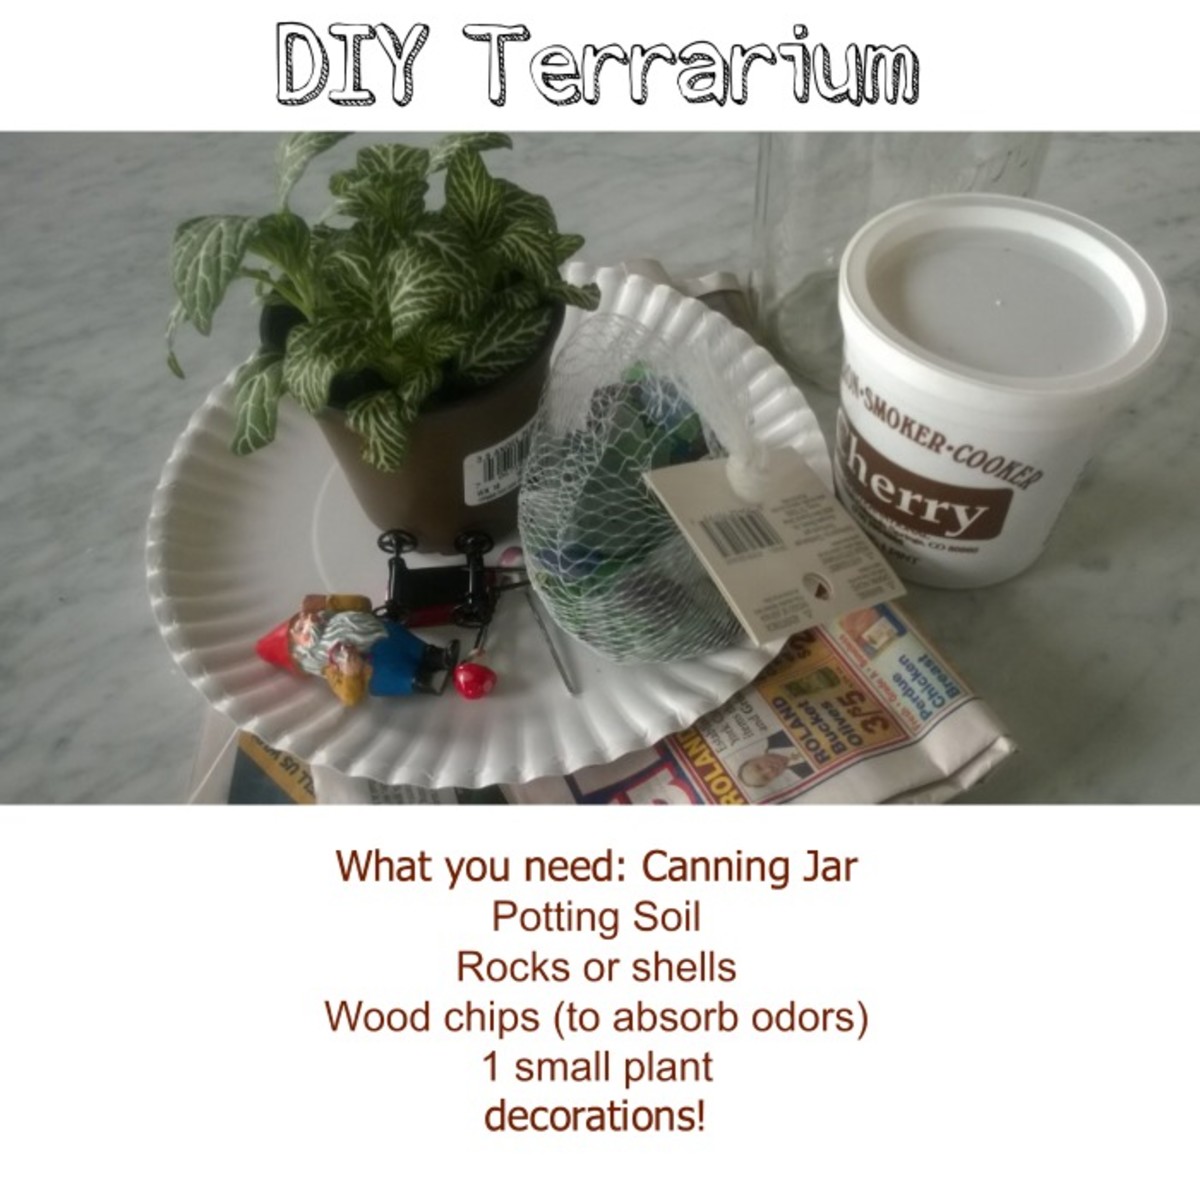 DIY terrarium craft